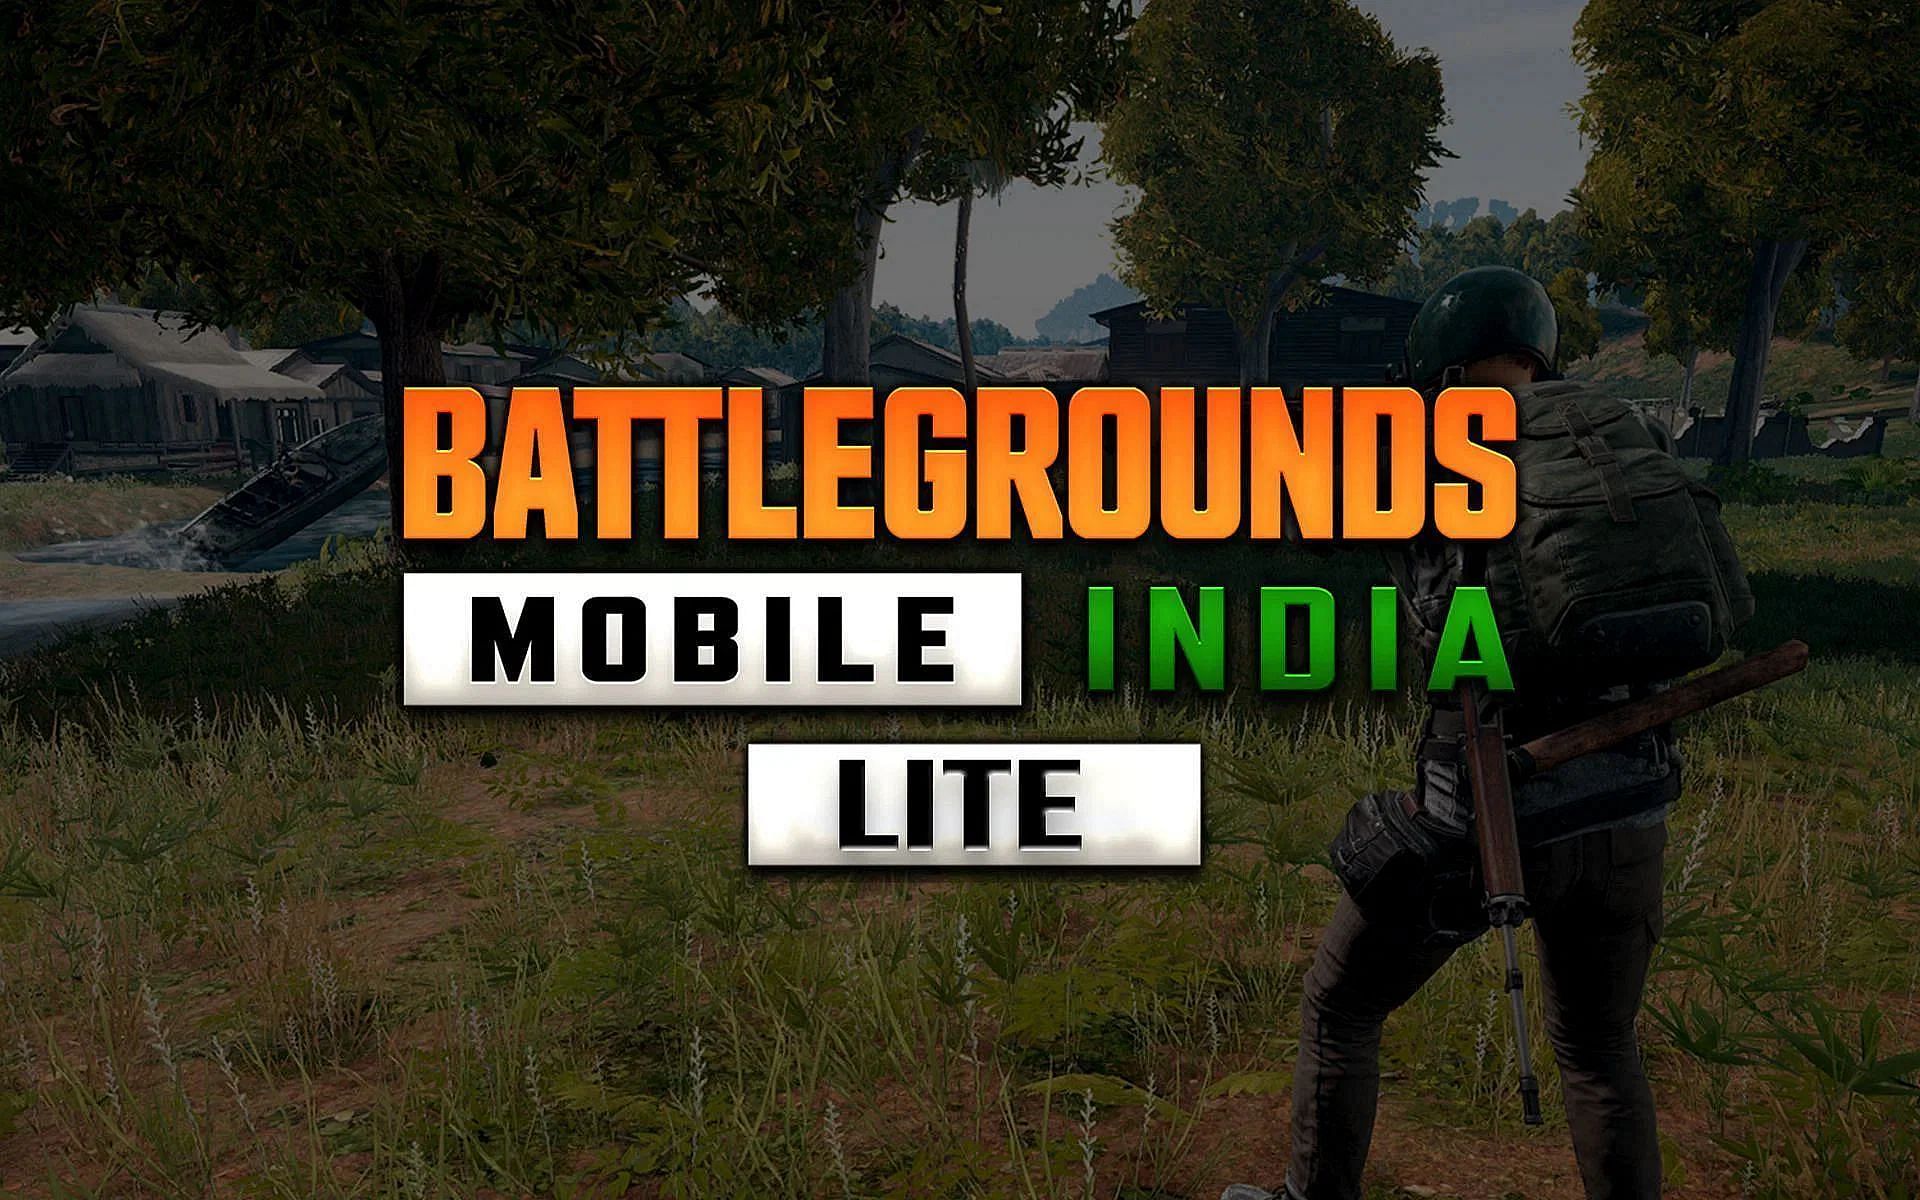 Les Dates De Sortie De Battlegrounds Mobile India Lite Sont Fausses Et Peu Fiables (Image Via Sportskeeda)